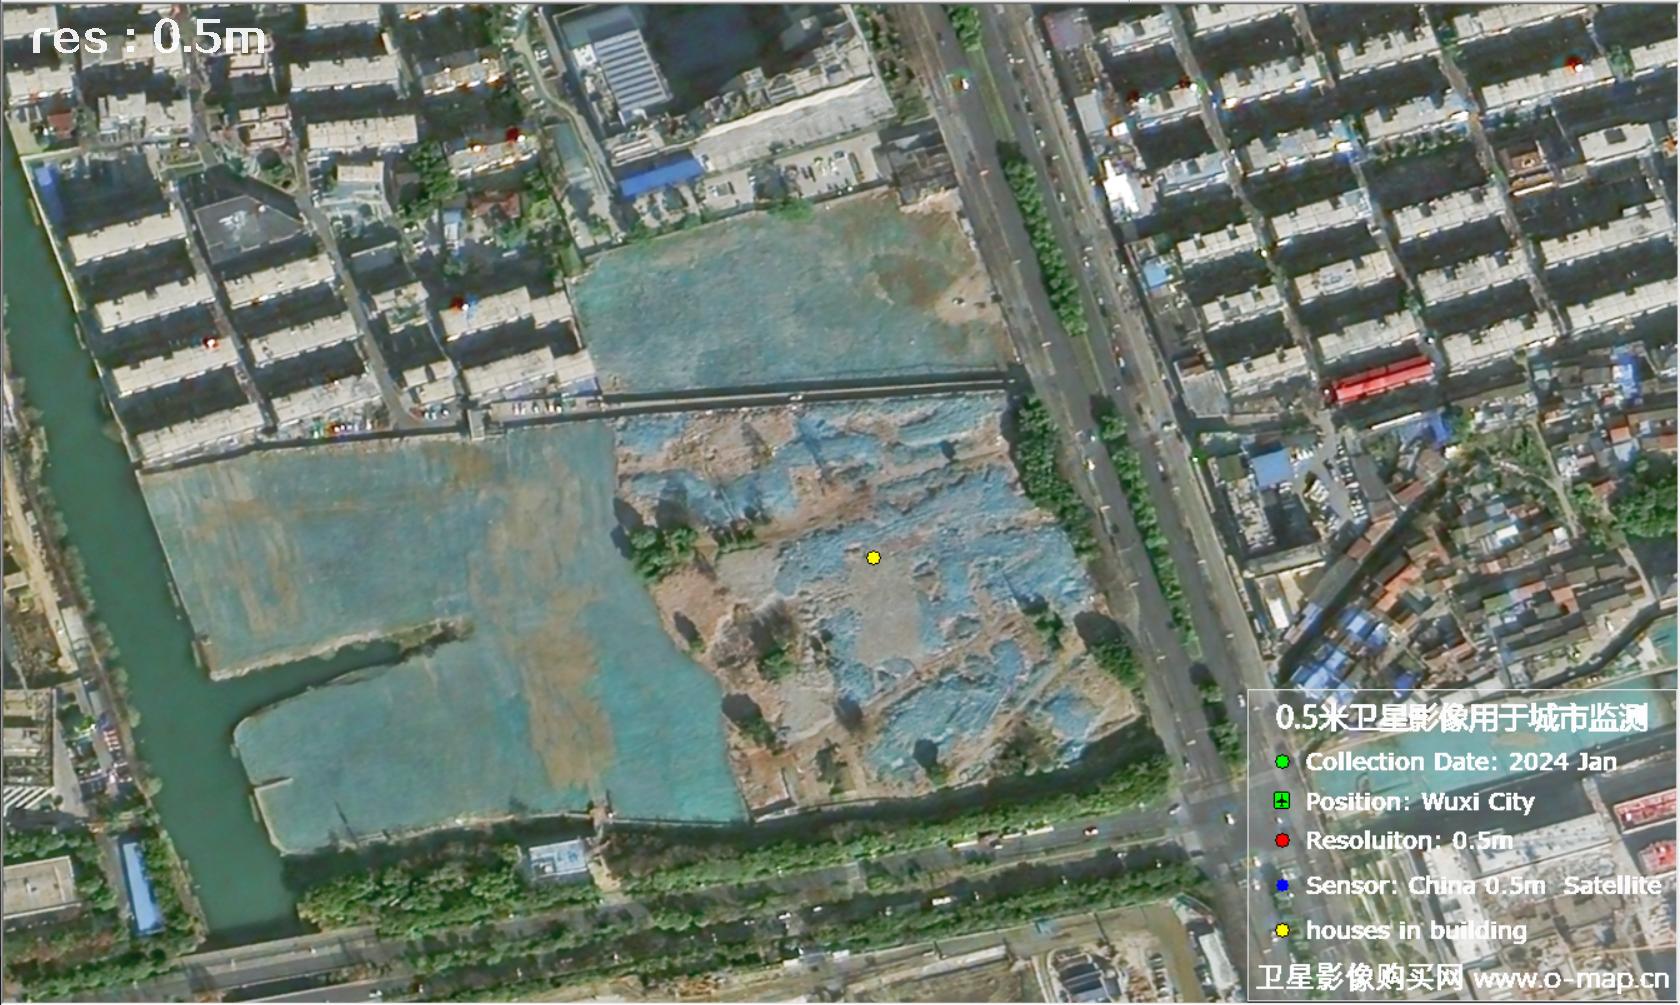 中国0.5米分辨率卫星影像用于无锡市在建房屋监测